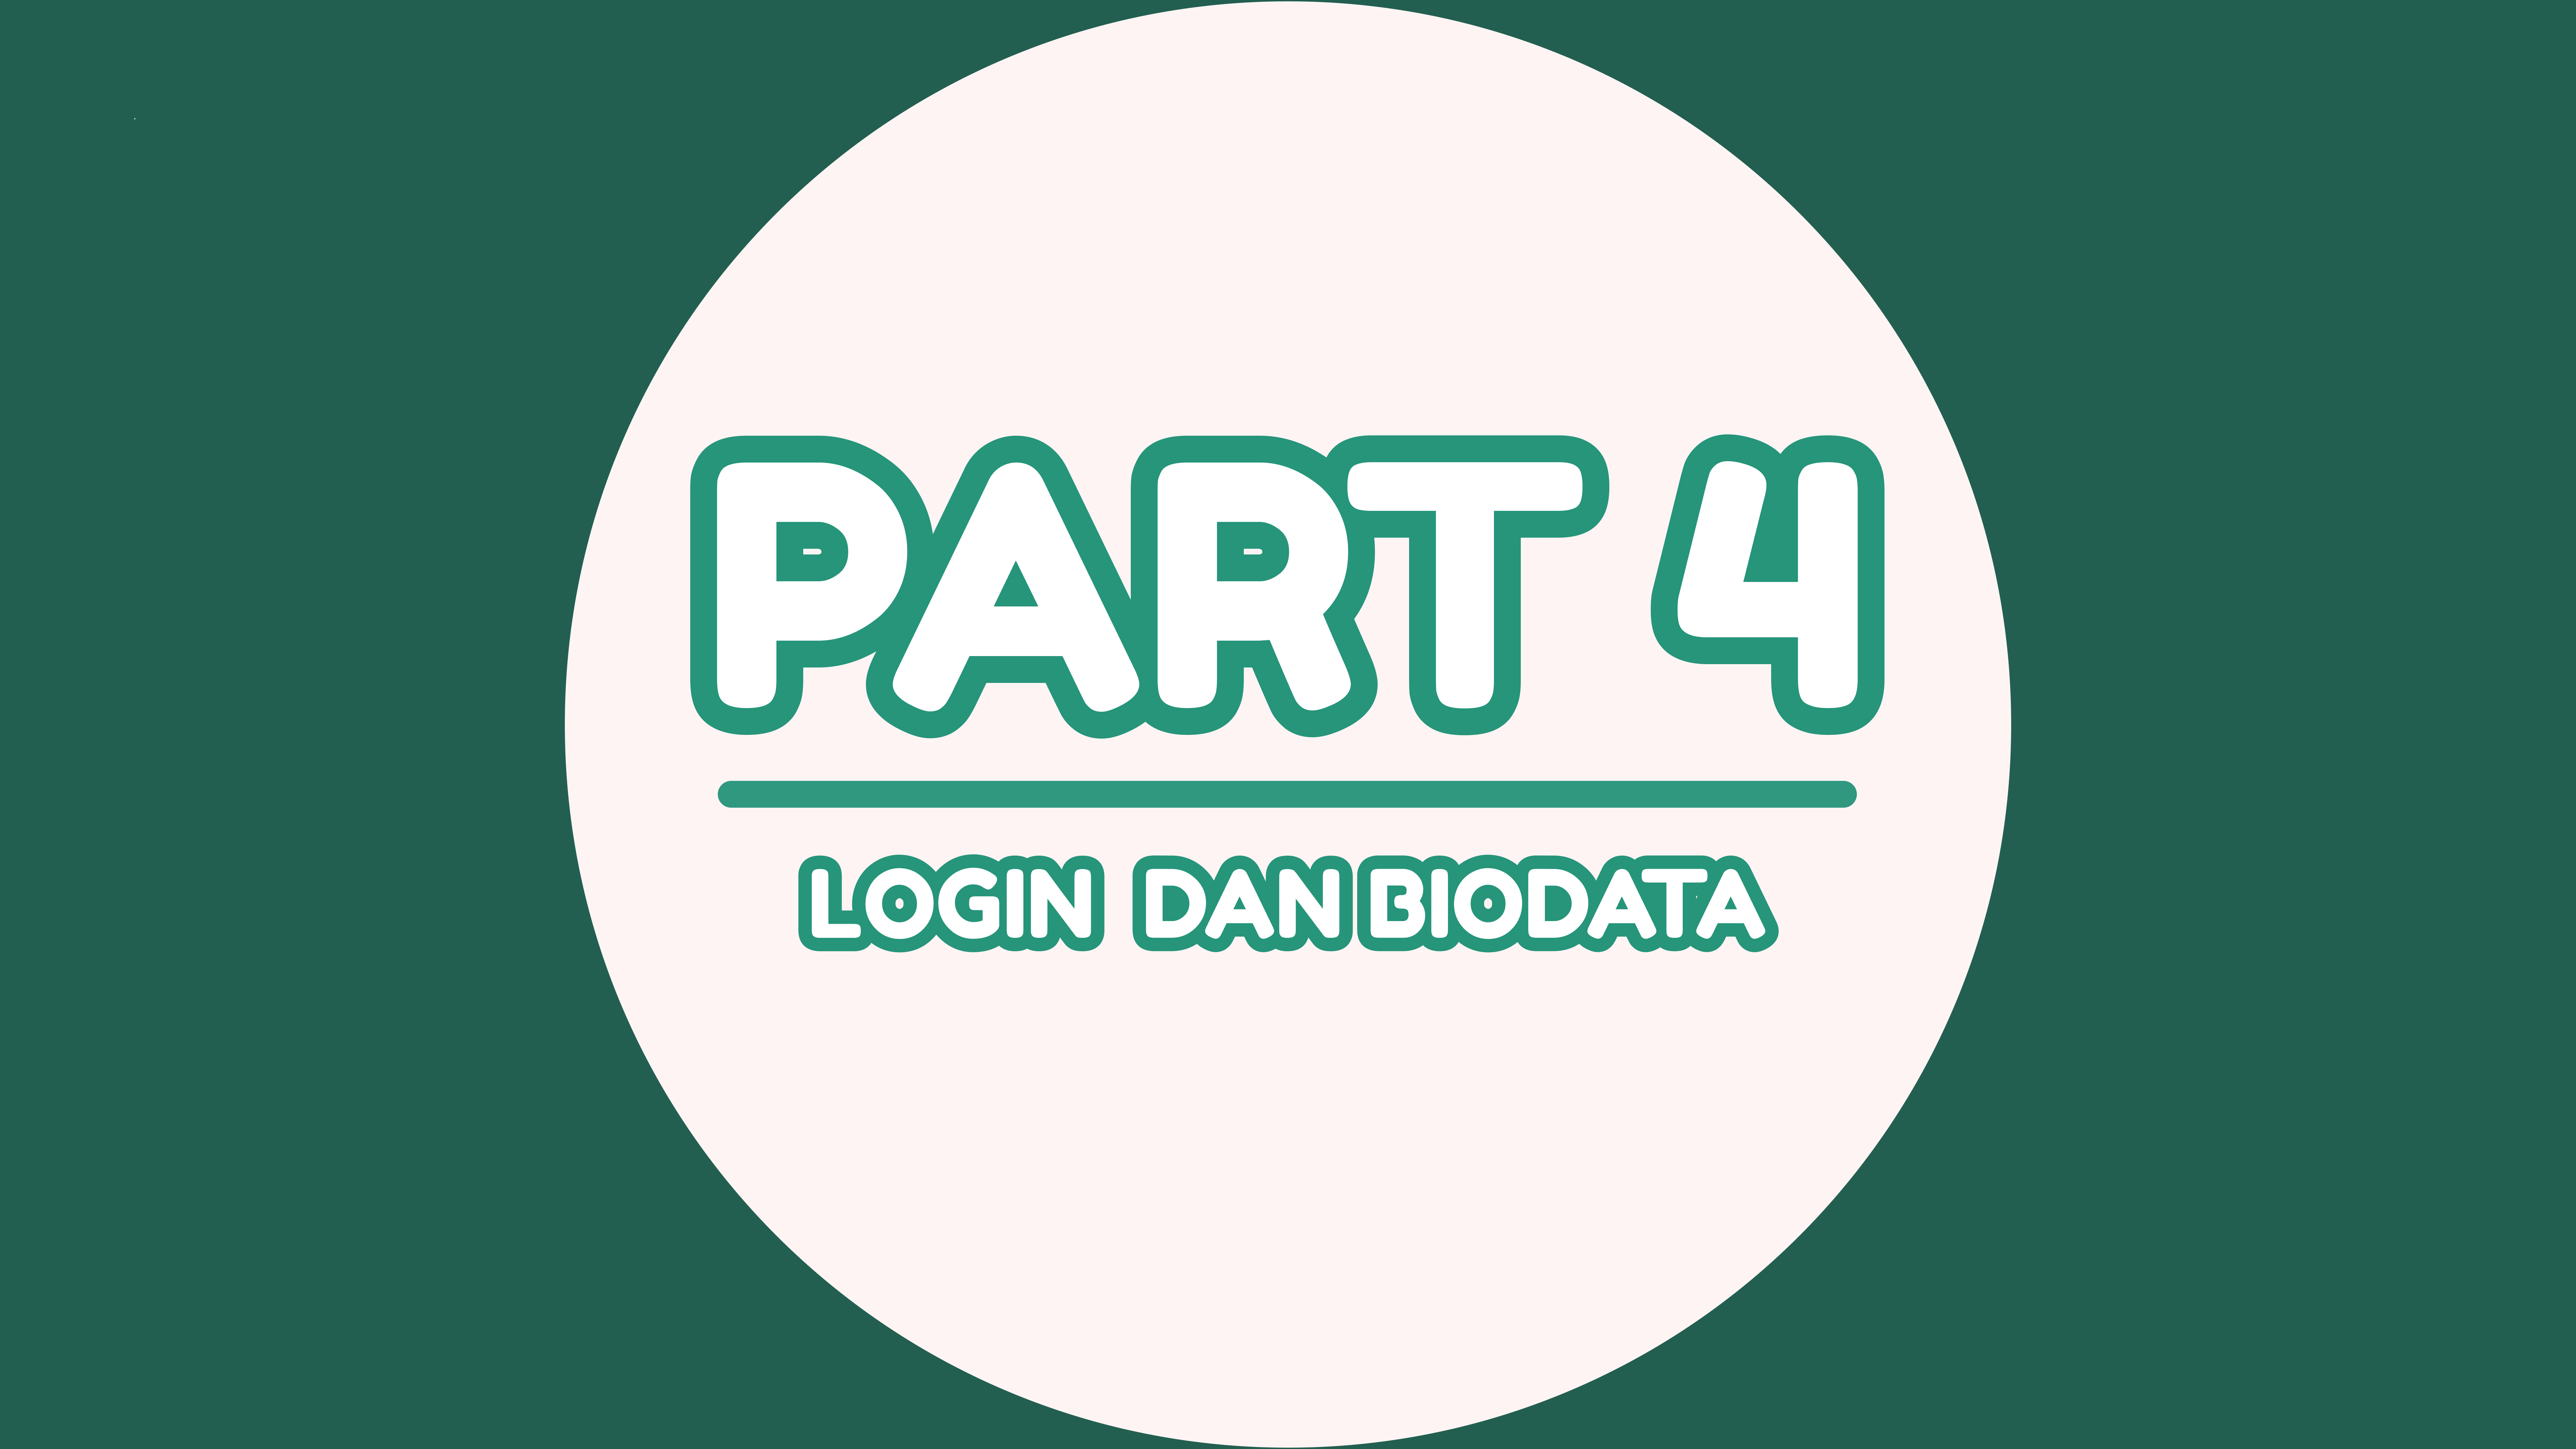 #4 Login dan Biodata